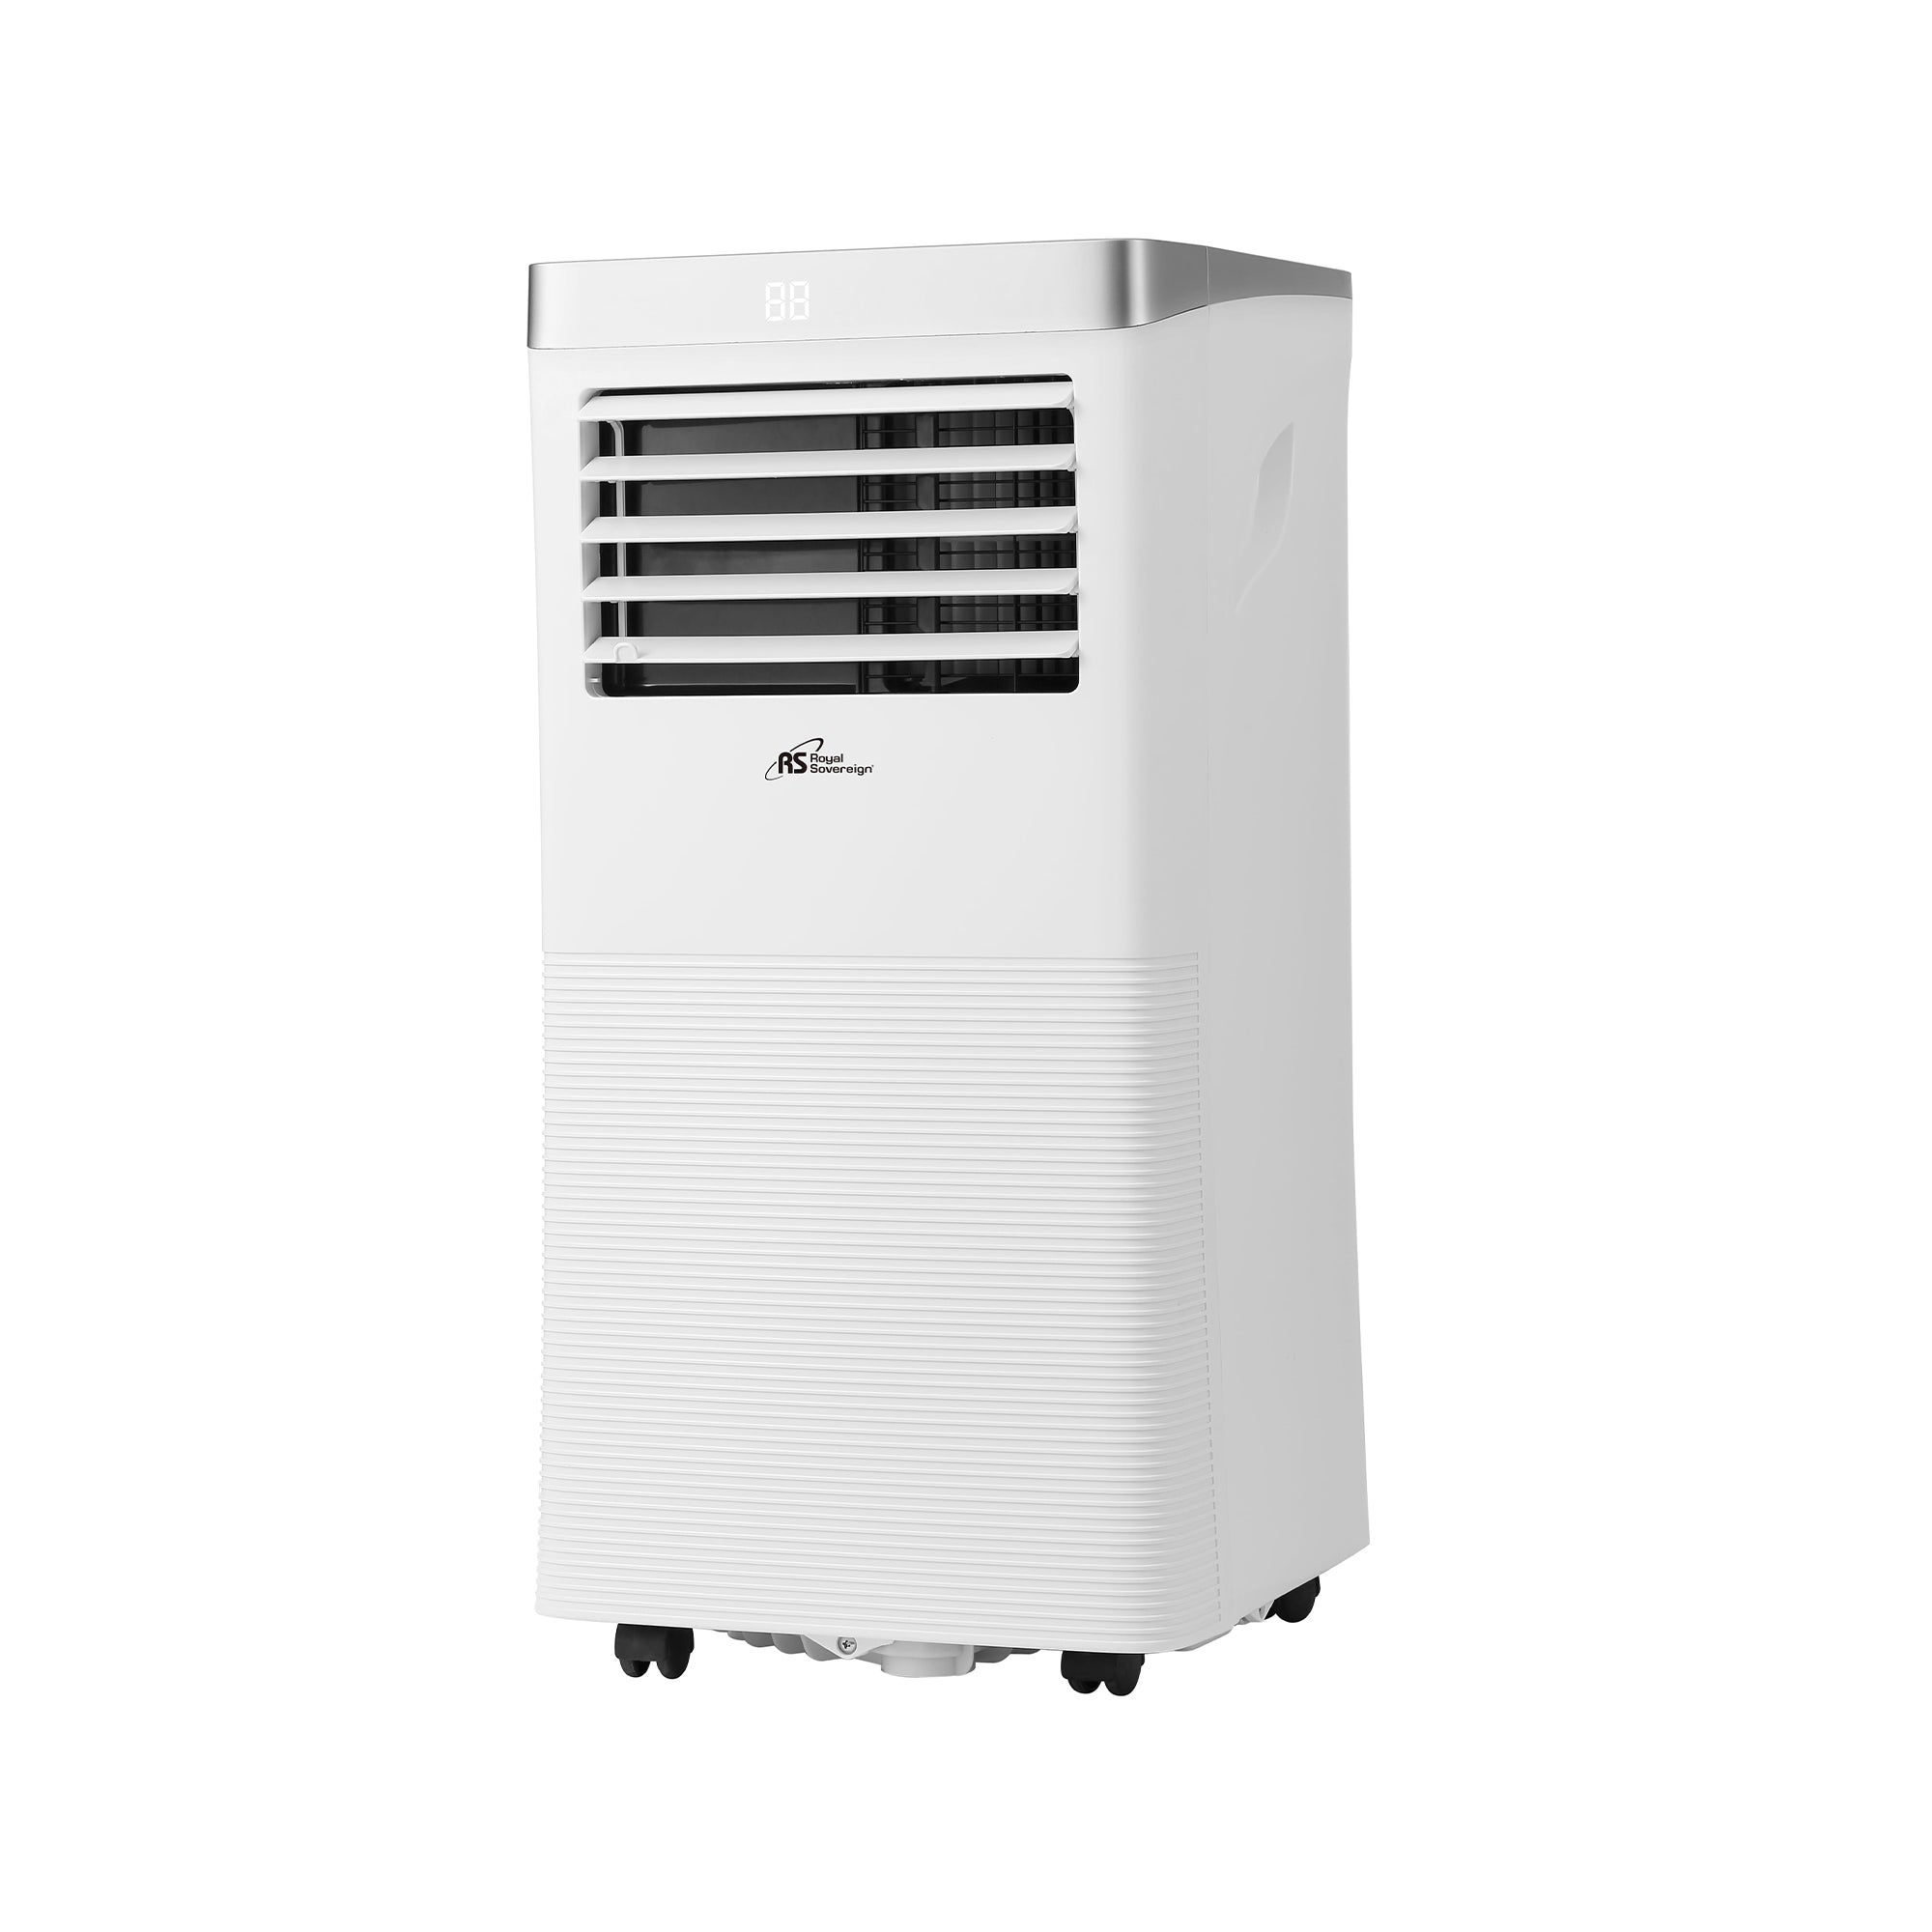 ARP-2210, 10,000 BTU Portable Air Conditioner